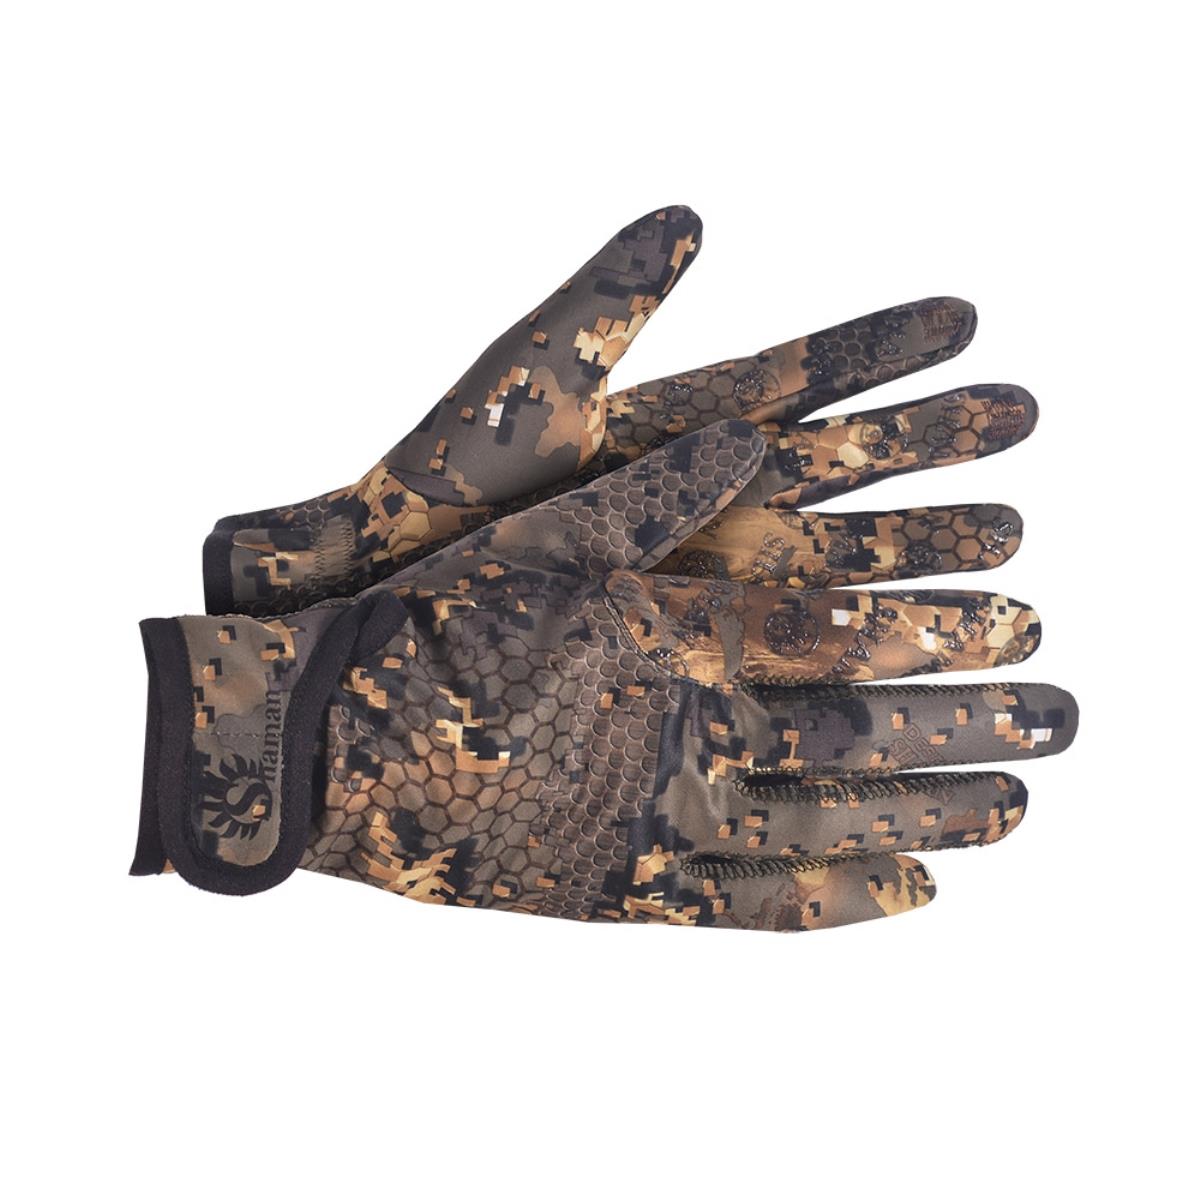 Перчатки Apex soft (S-700) SHAMAN перчатки гк спецобъединение защита зима пер 209